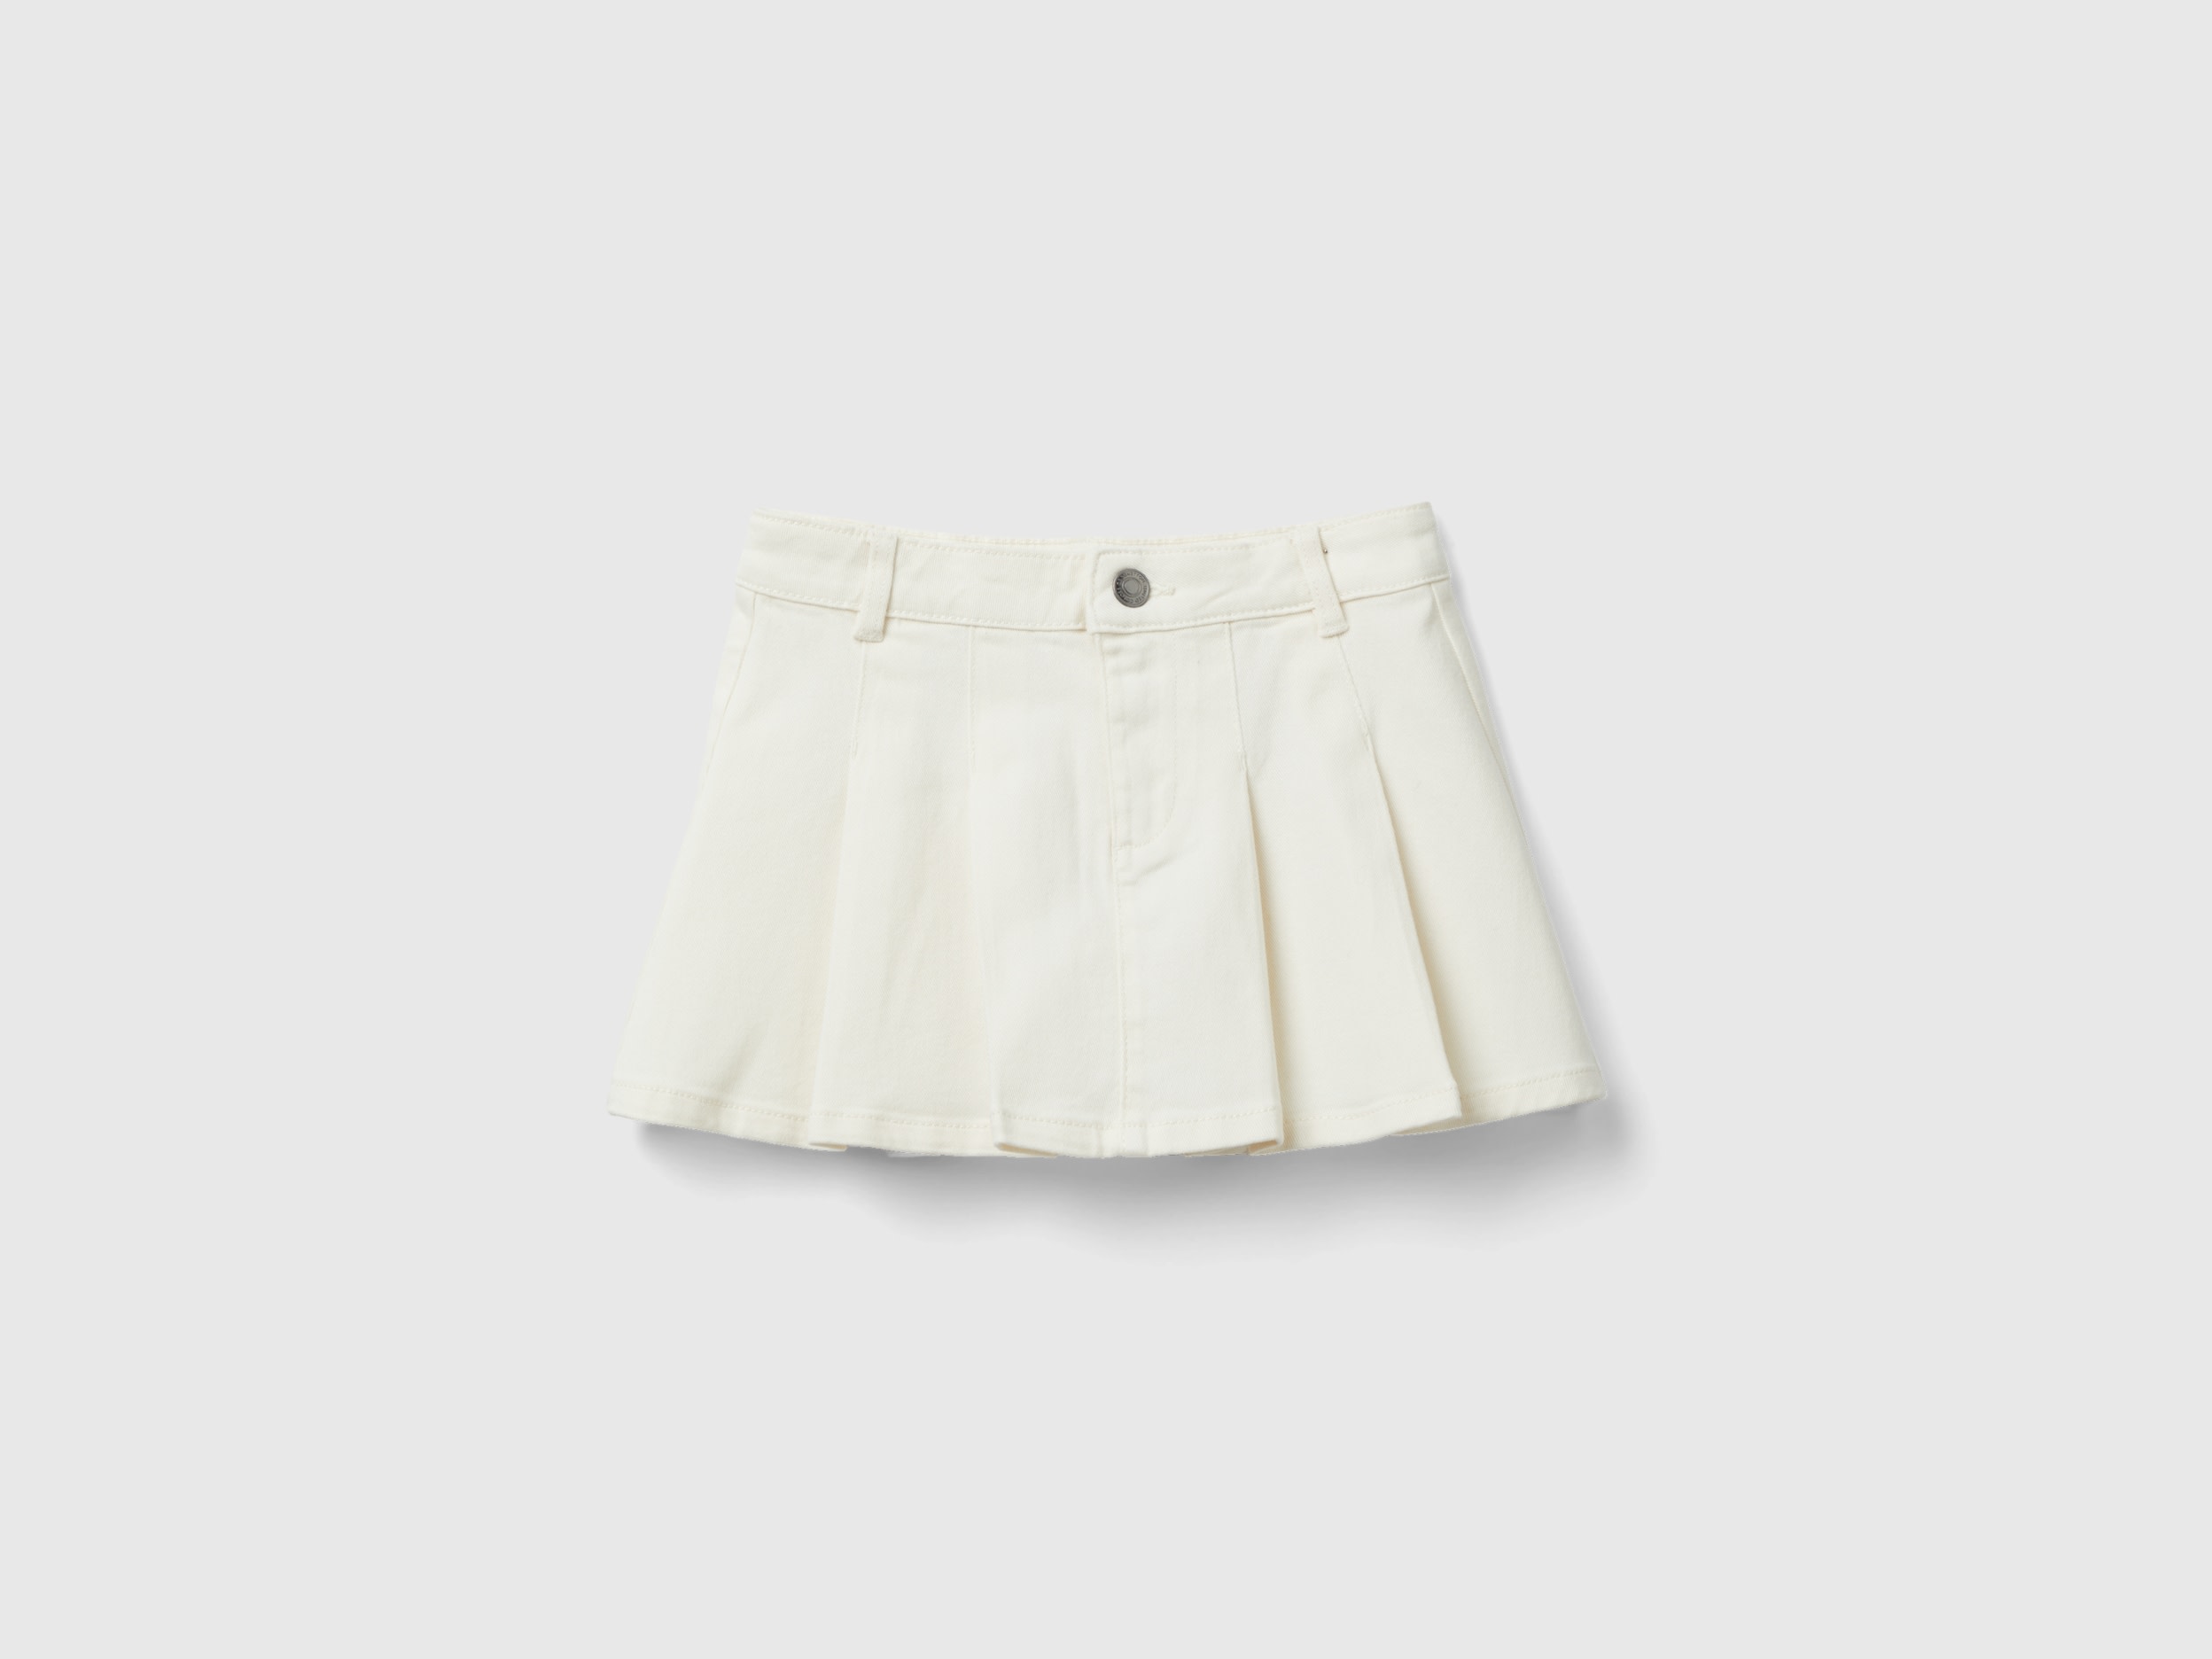 Benetton, Pleated Miniskirt, size M, Creamy White, Kids